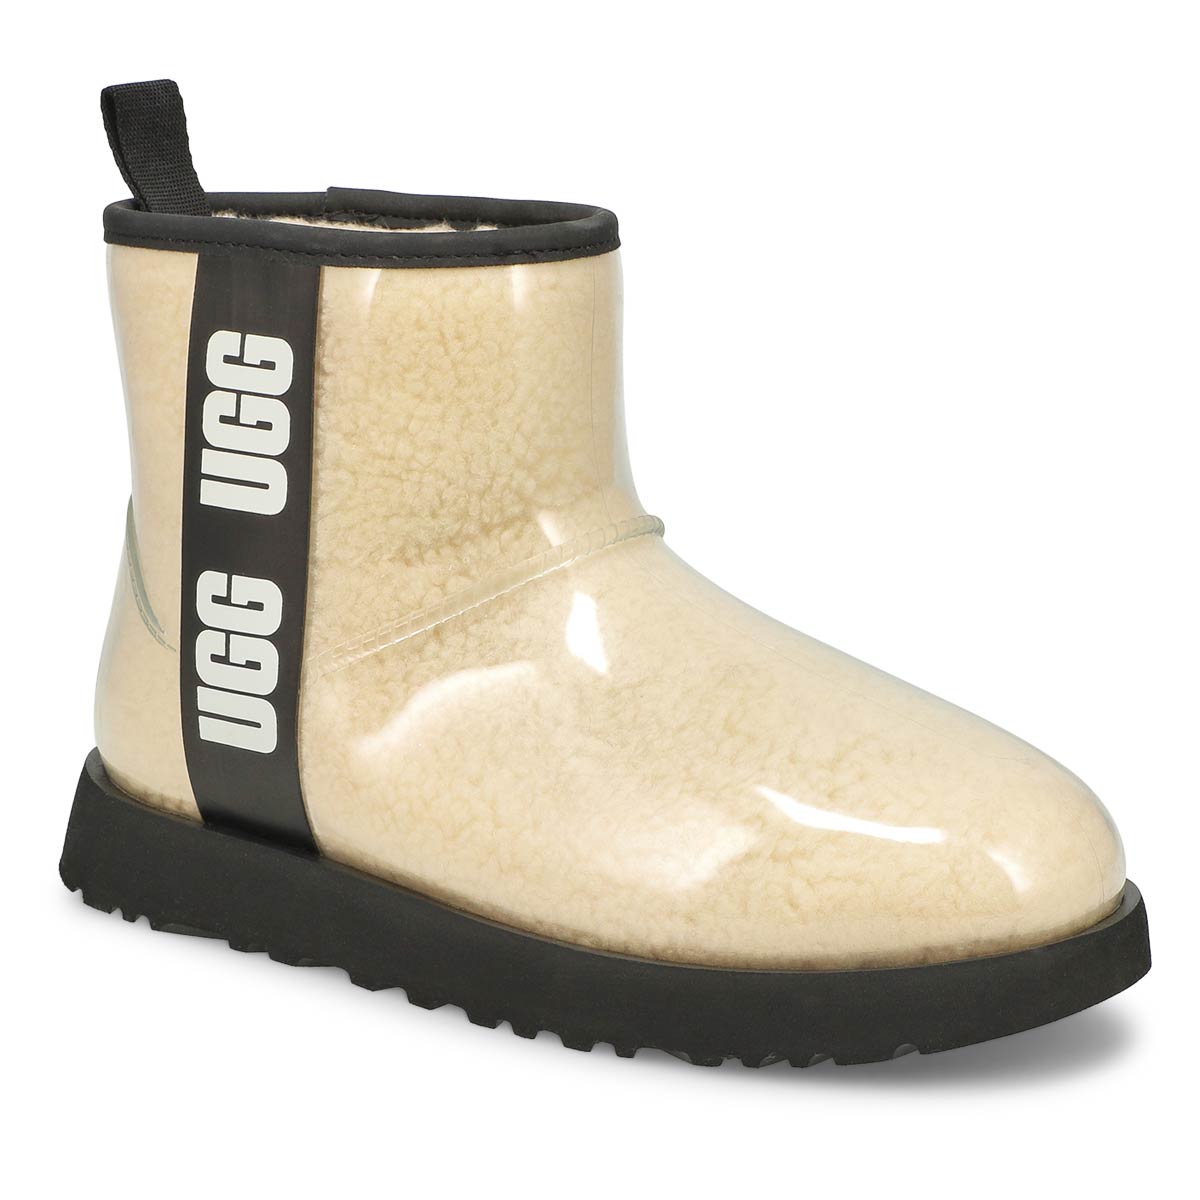 softmoc ugg boots